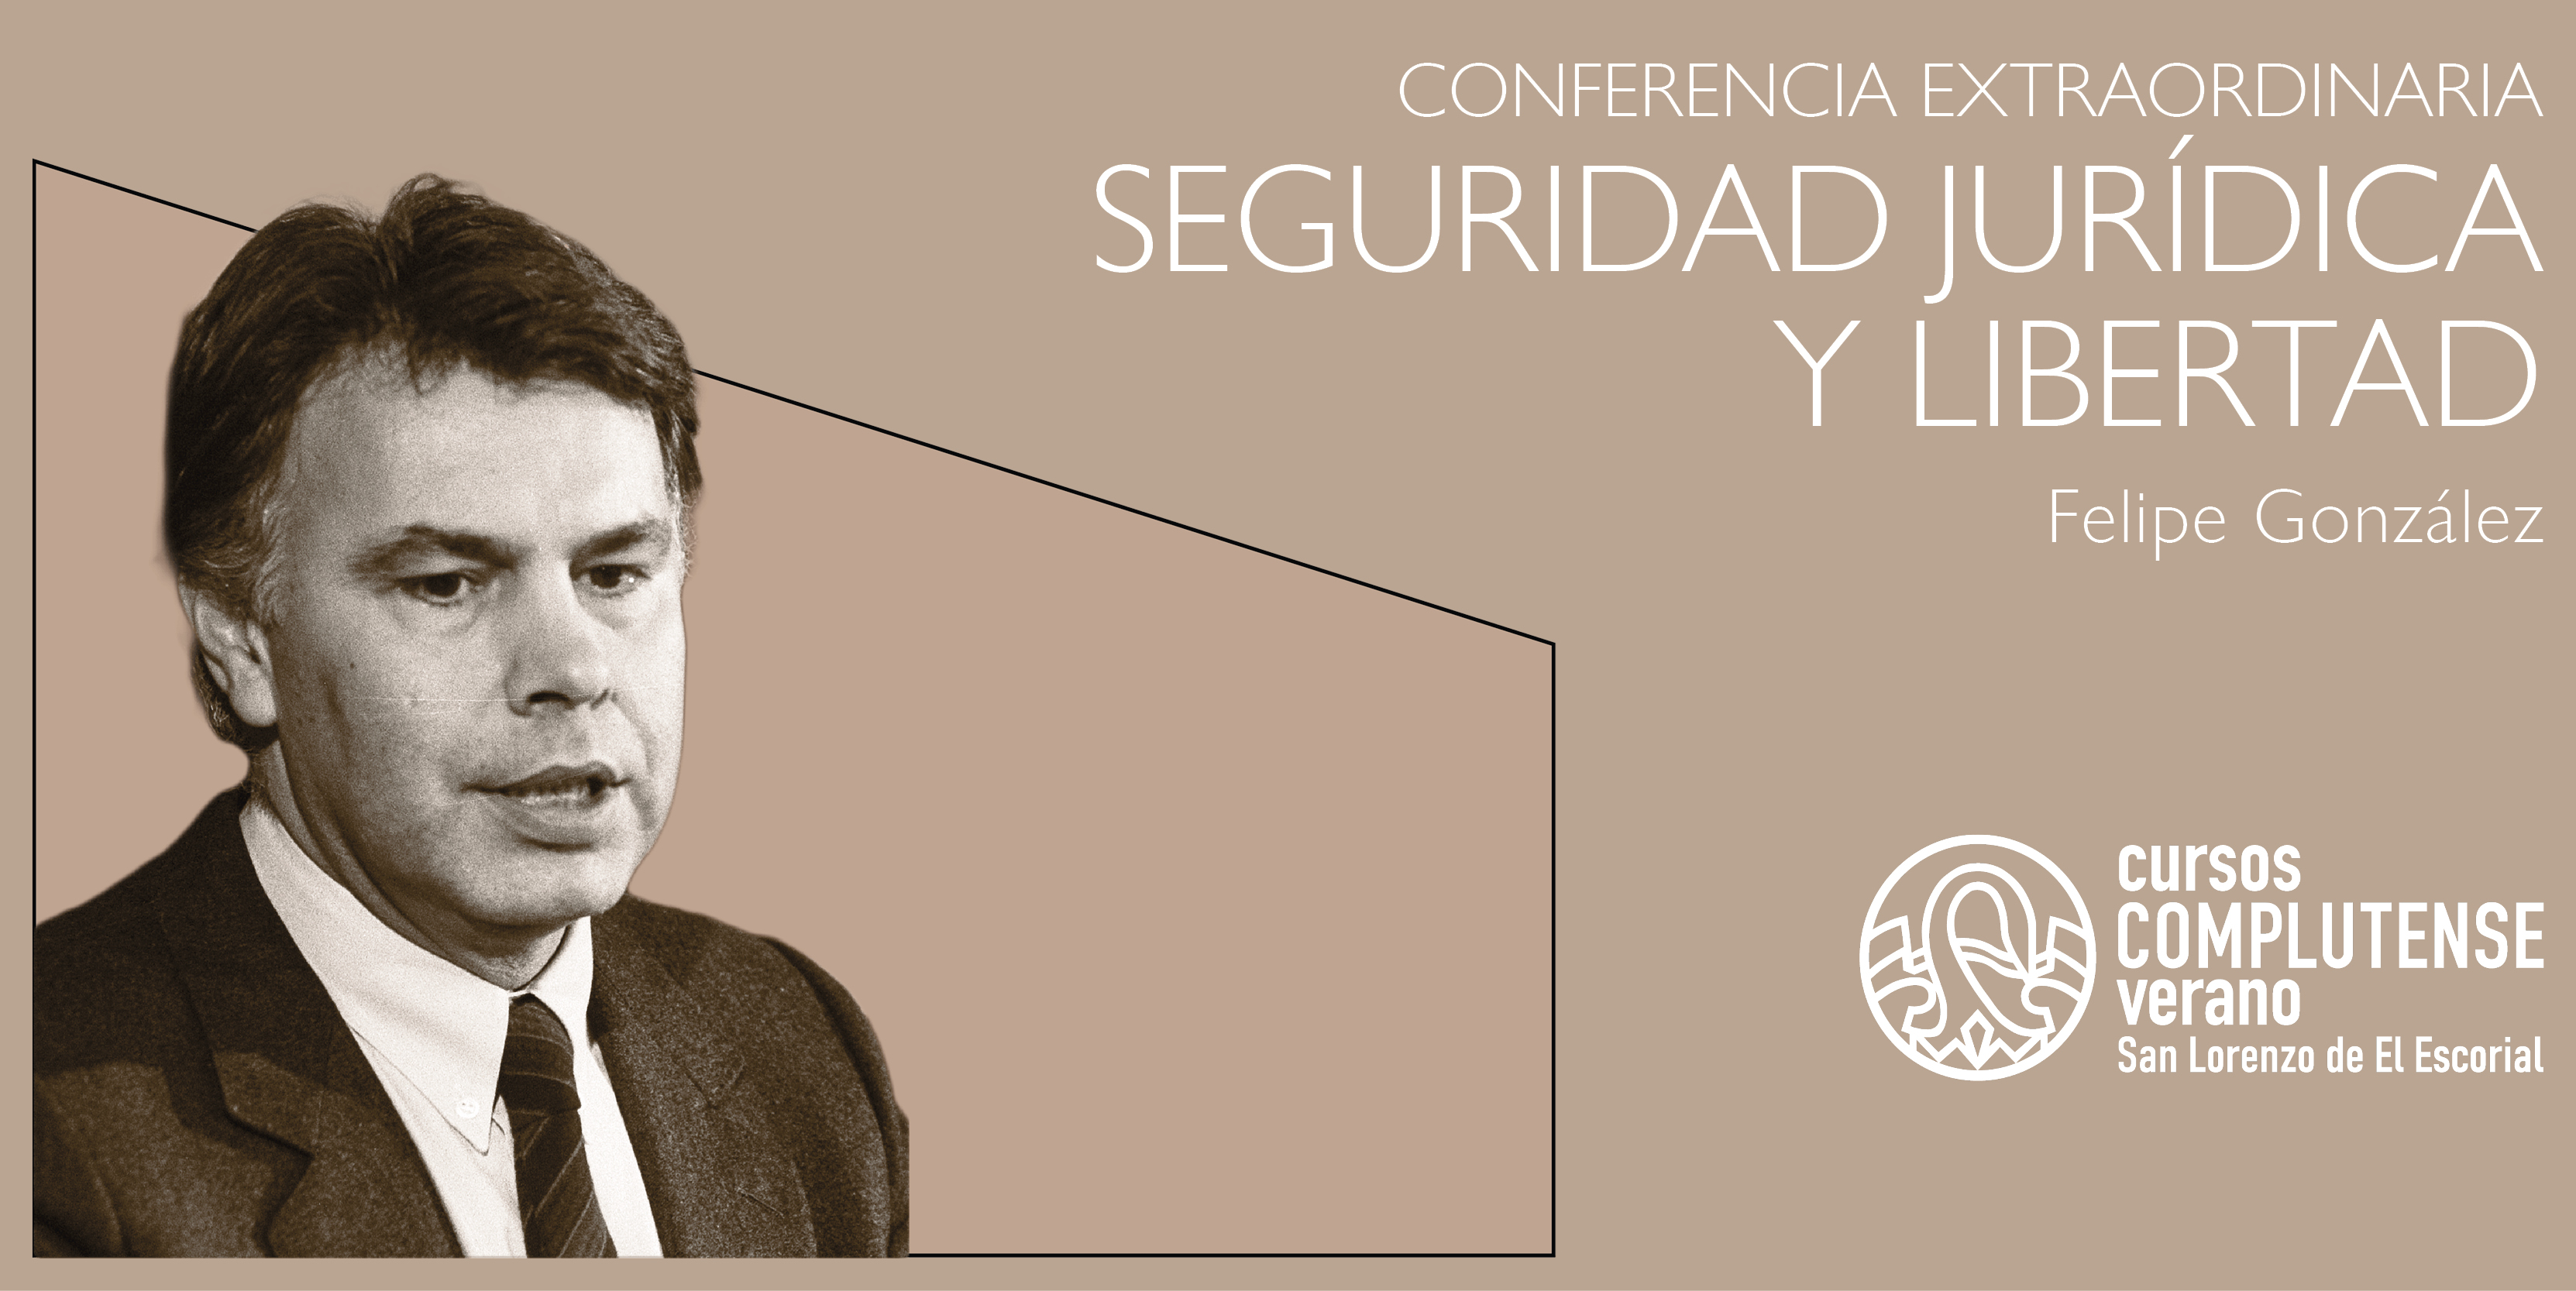 Sigue en directo la conferencia extraordinaria de Felipe González. Miércoles 6 de julio, a las 12h